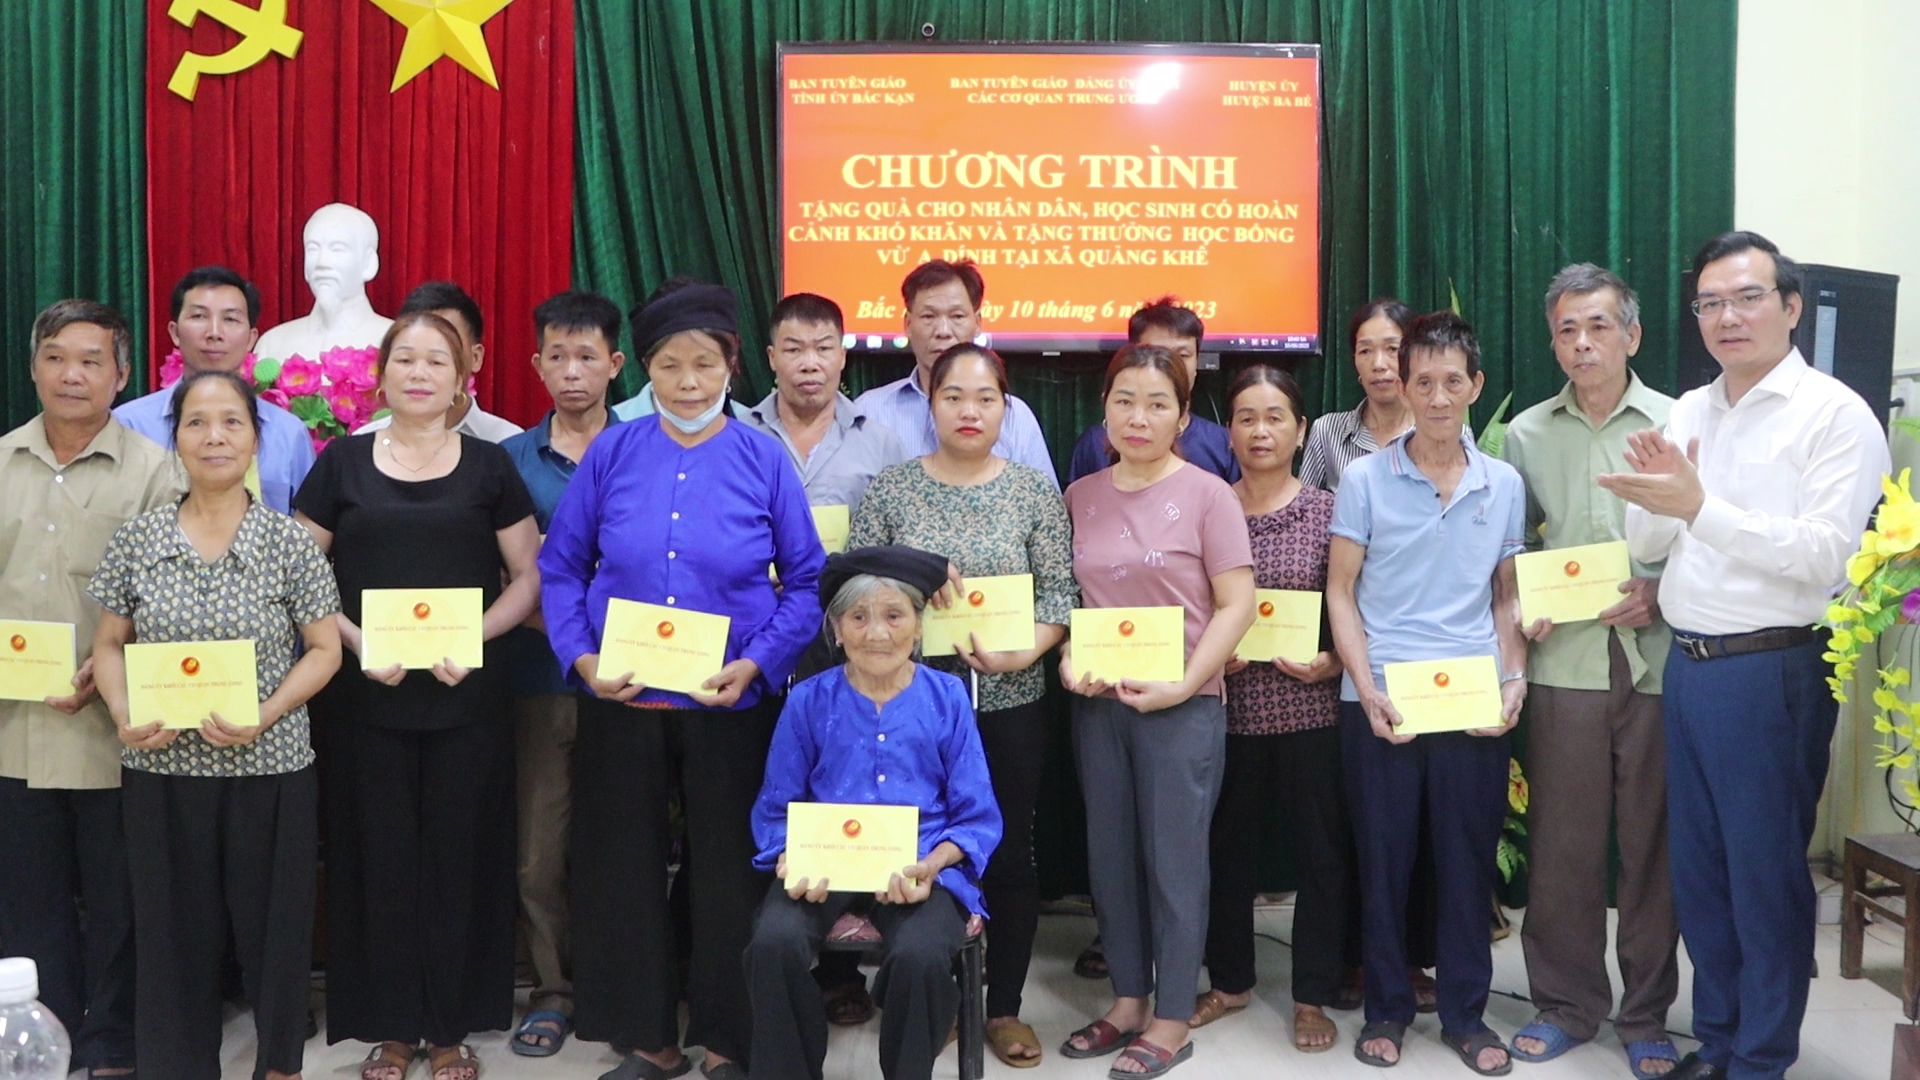 Tặng quà cho nhân dân học sinh có hoàn cảnh khó khăn tại xã Quảng Khê